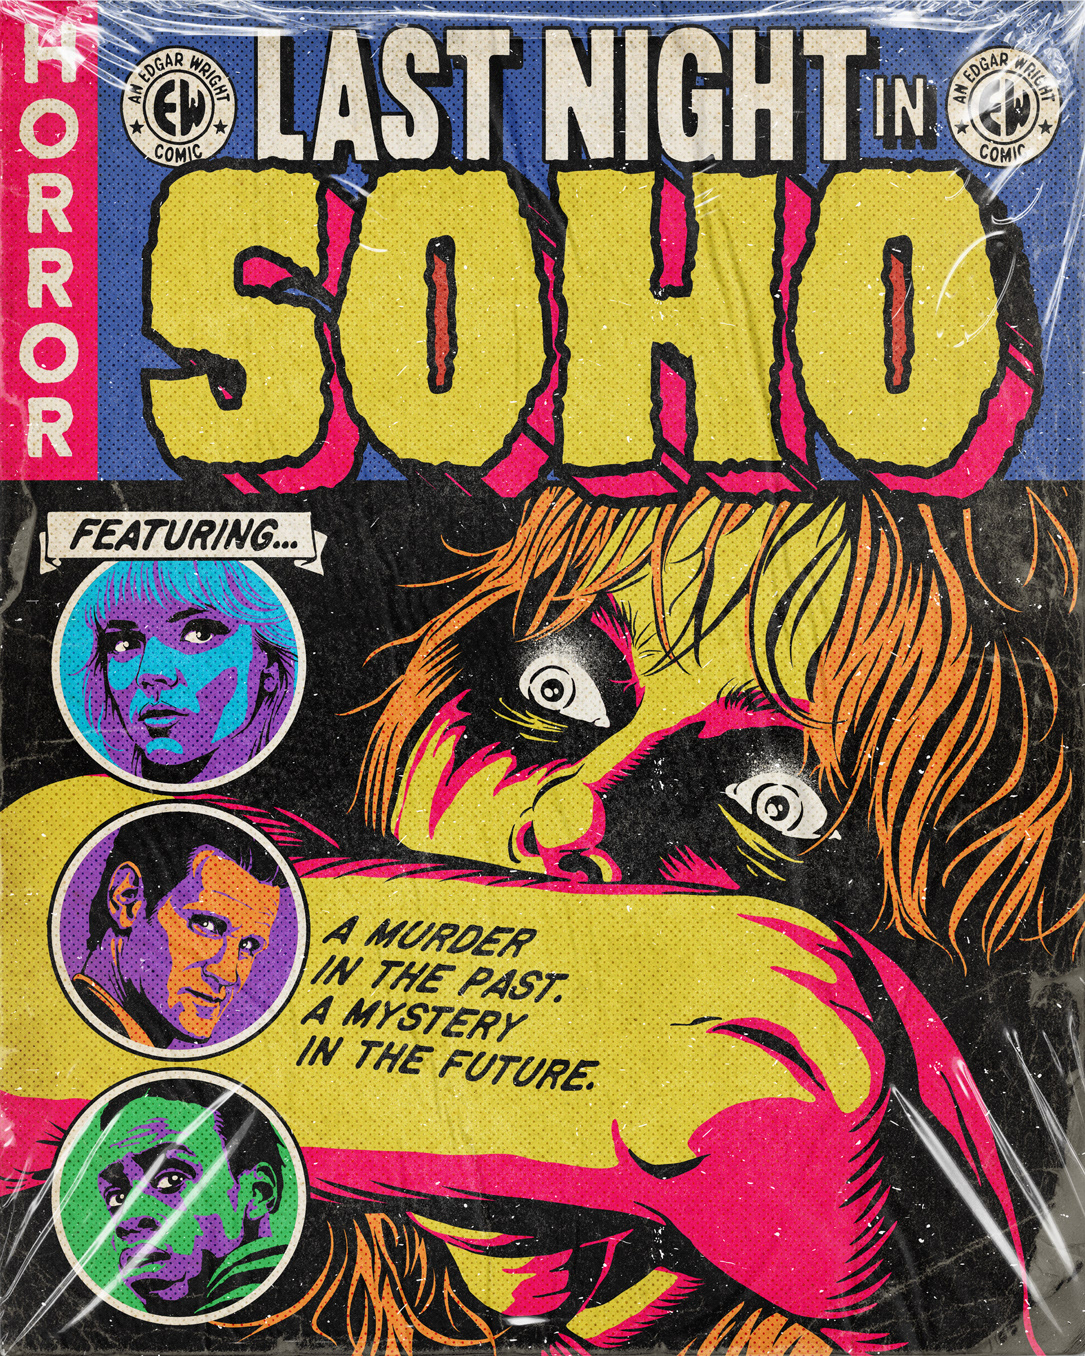 anya taylor joy Comic Book comics ec comics Edgar Wright horror horror comics last night in soho Pop Art vintage comics